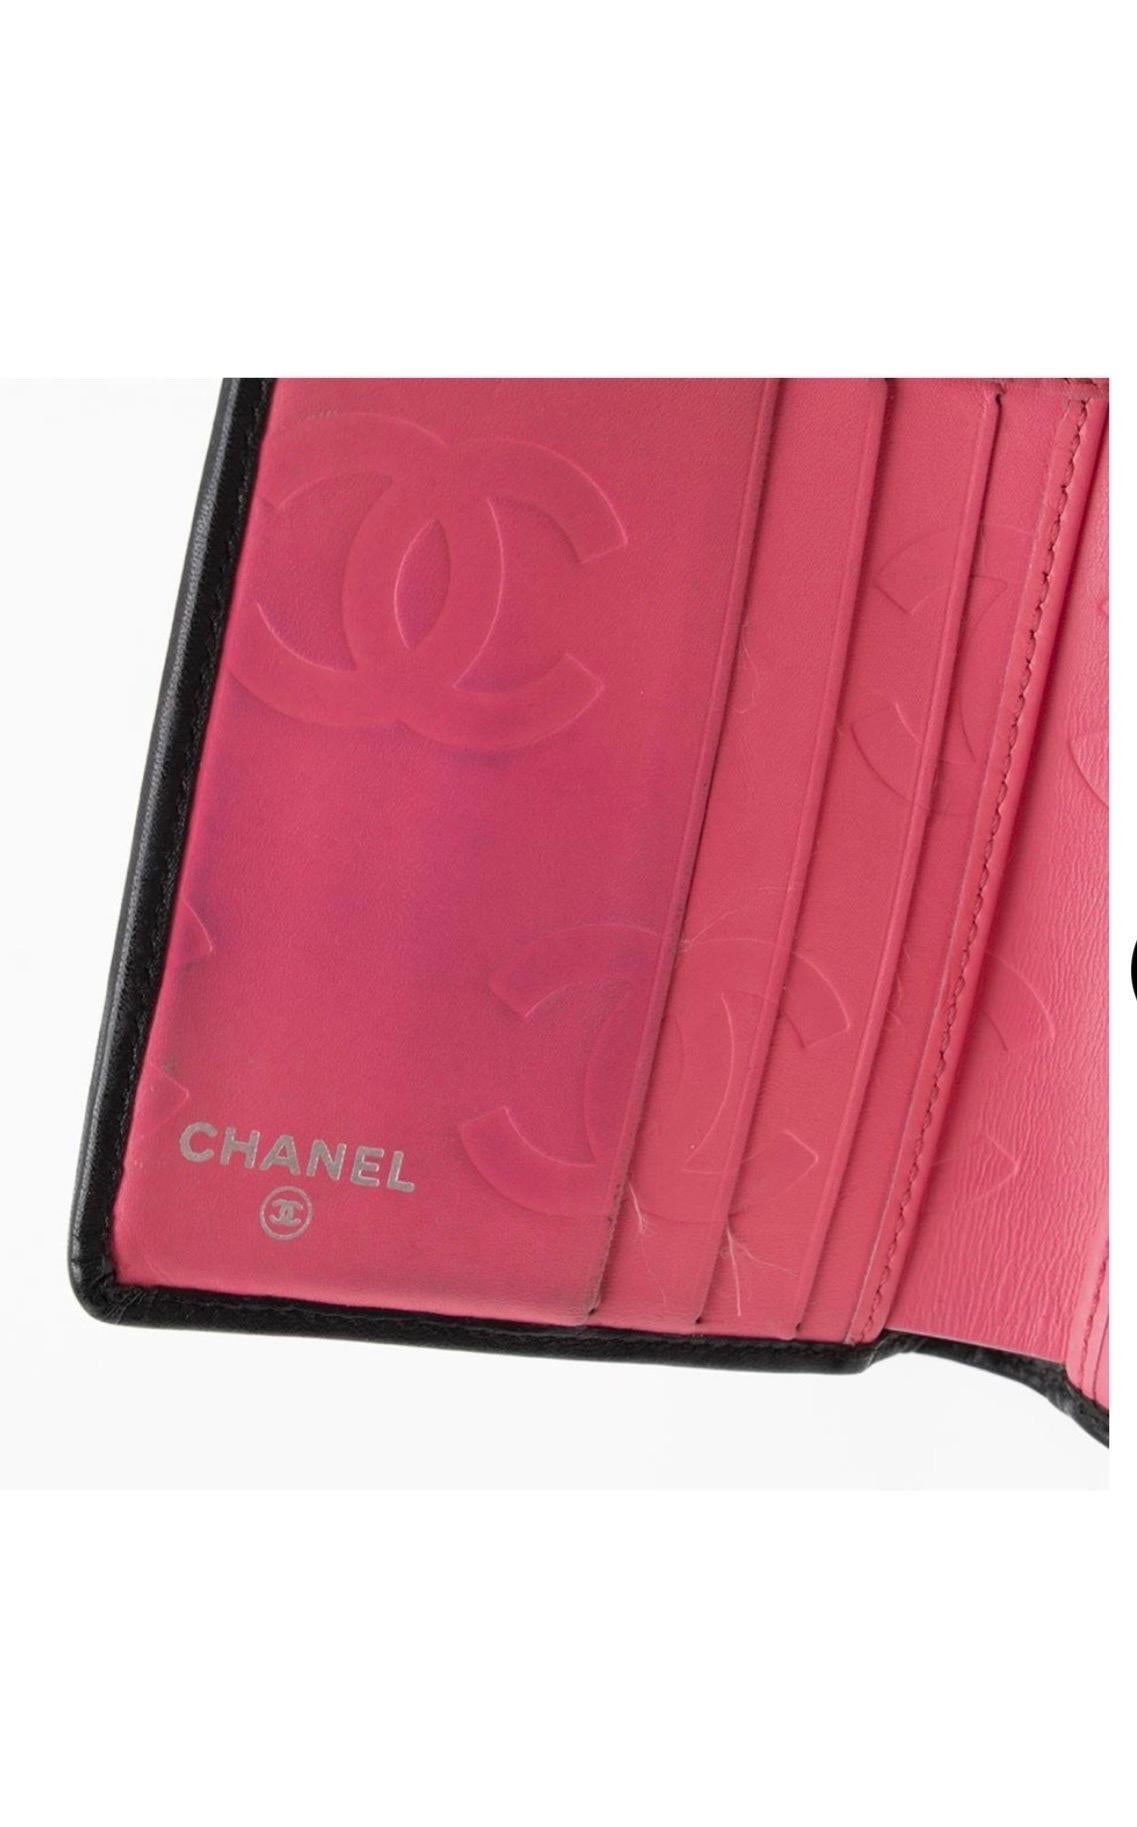 Chanel Portefeuille ligne Cambon en cuir émaillé noir Sil No.9608651

Code de date/Numéro de série : 9608651
Fabriqué en : France
Mesures : Longueur :  largeur de 4